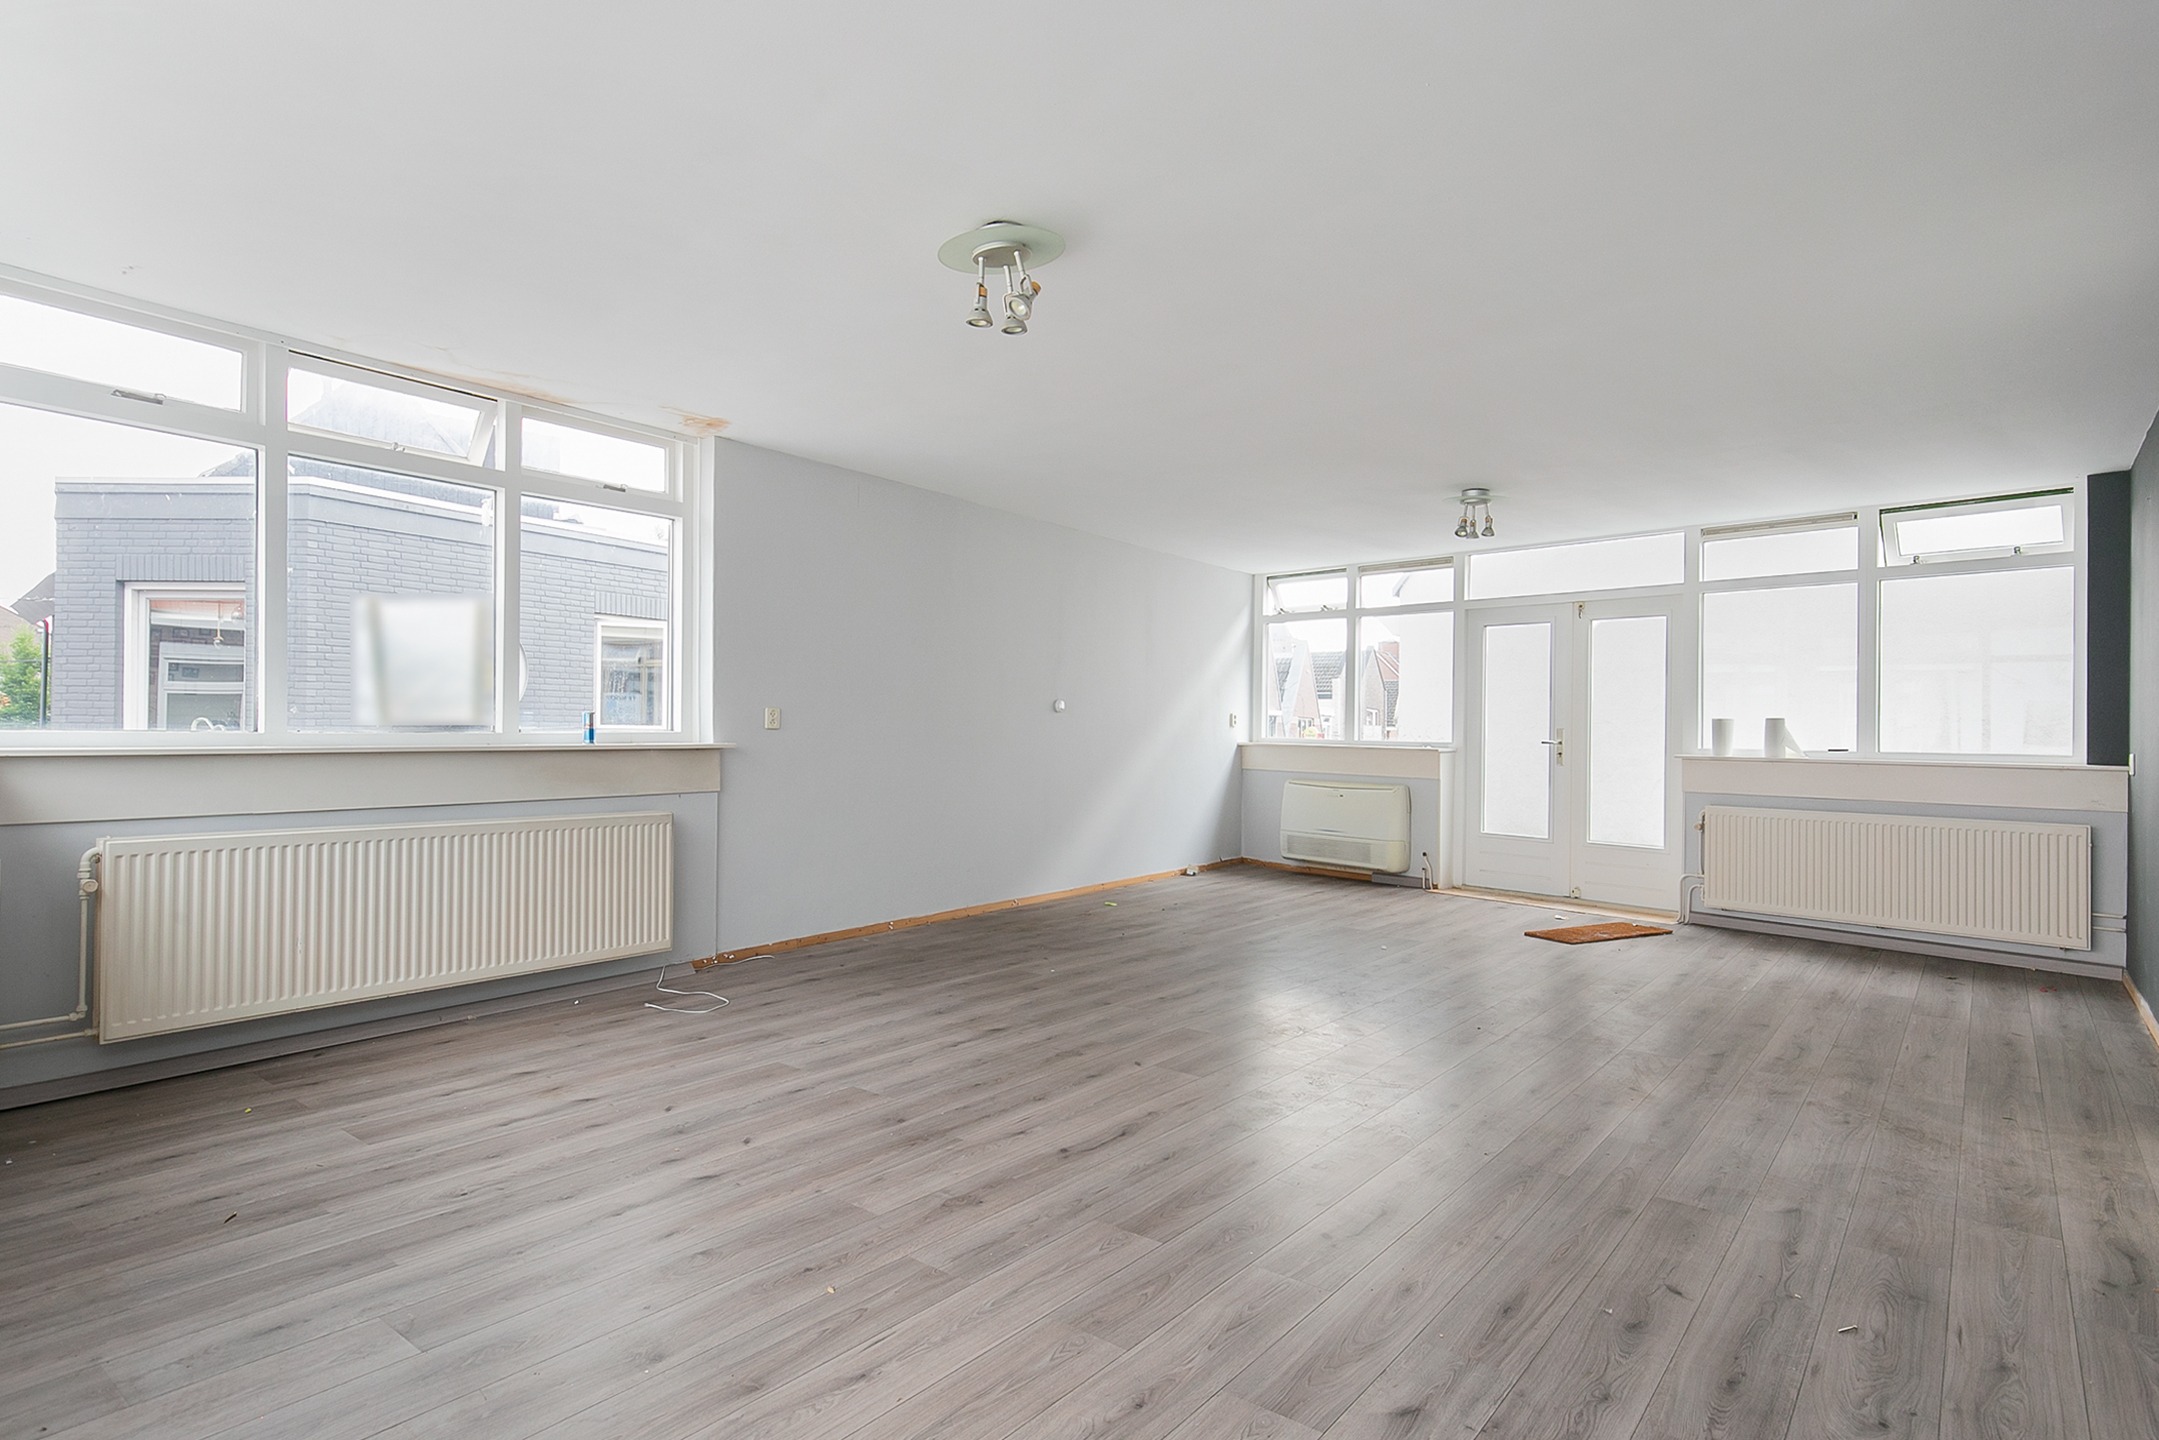 Woning / appartement - Leerdam - Nieuwstraat 2